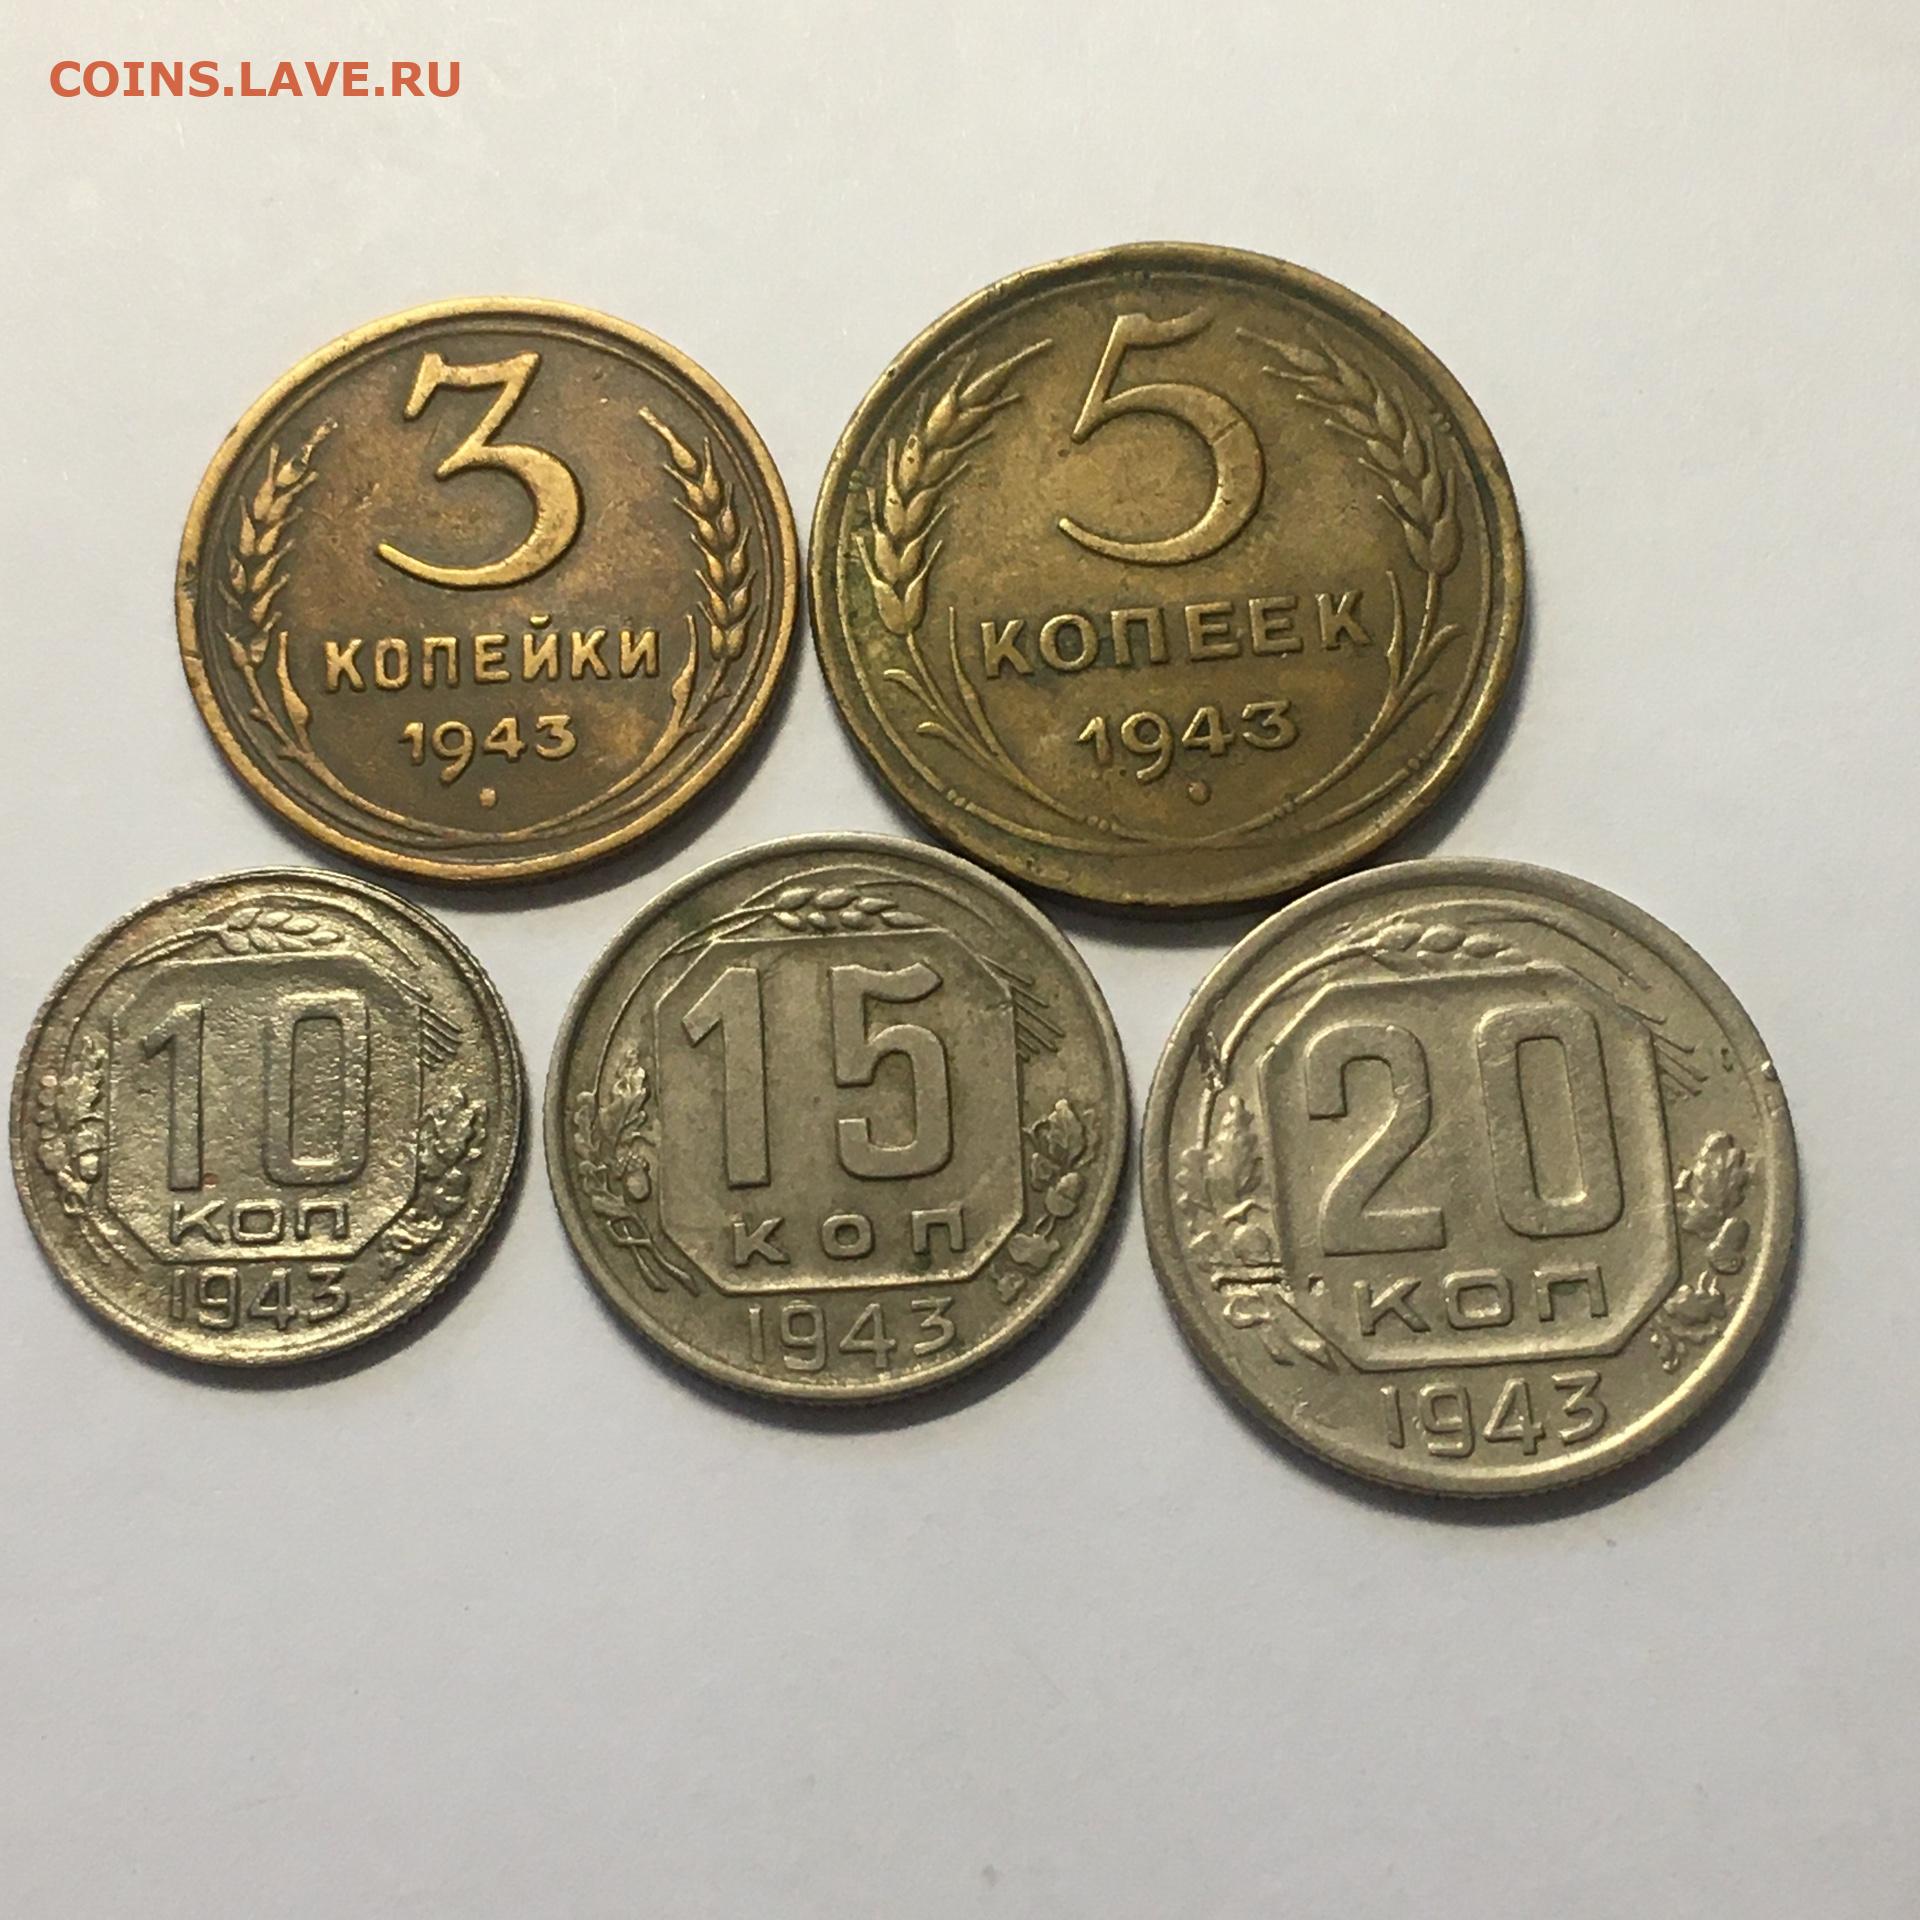 5 копеек 20. Словенские монеты 1943. 04.04.1943 Монета.